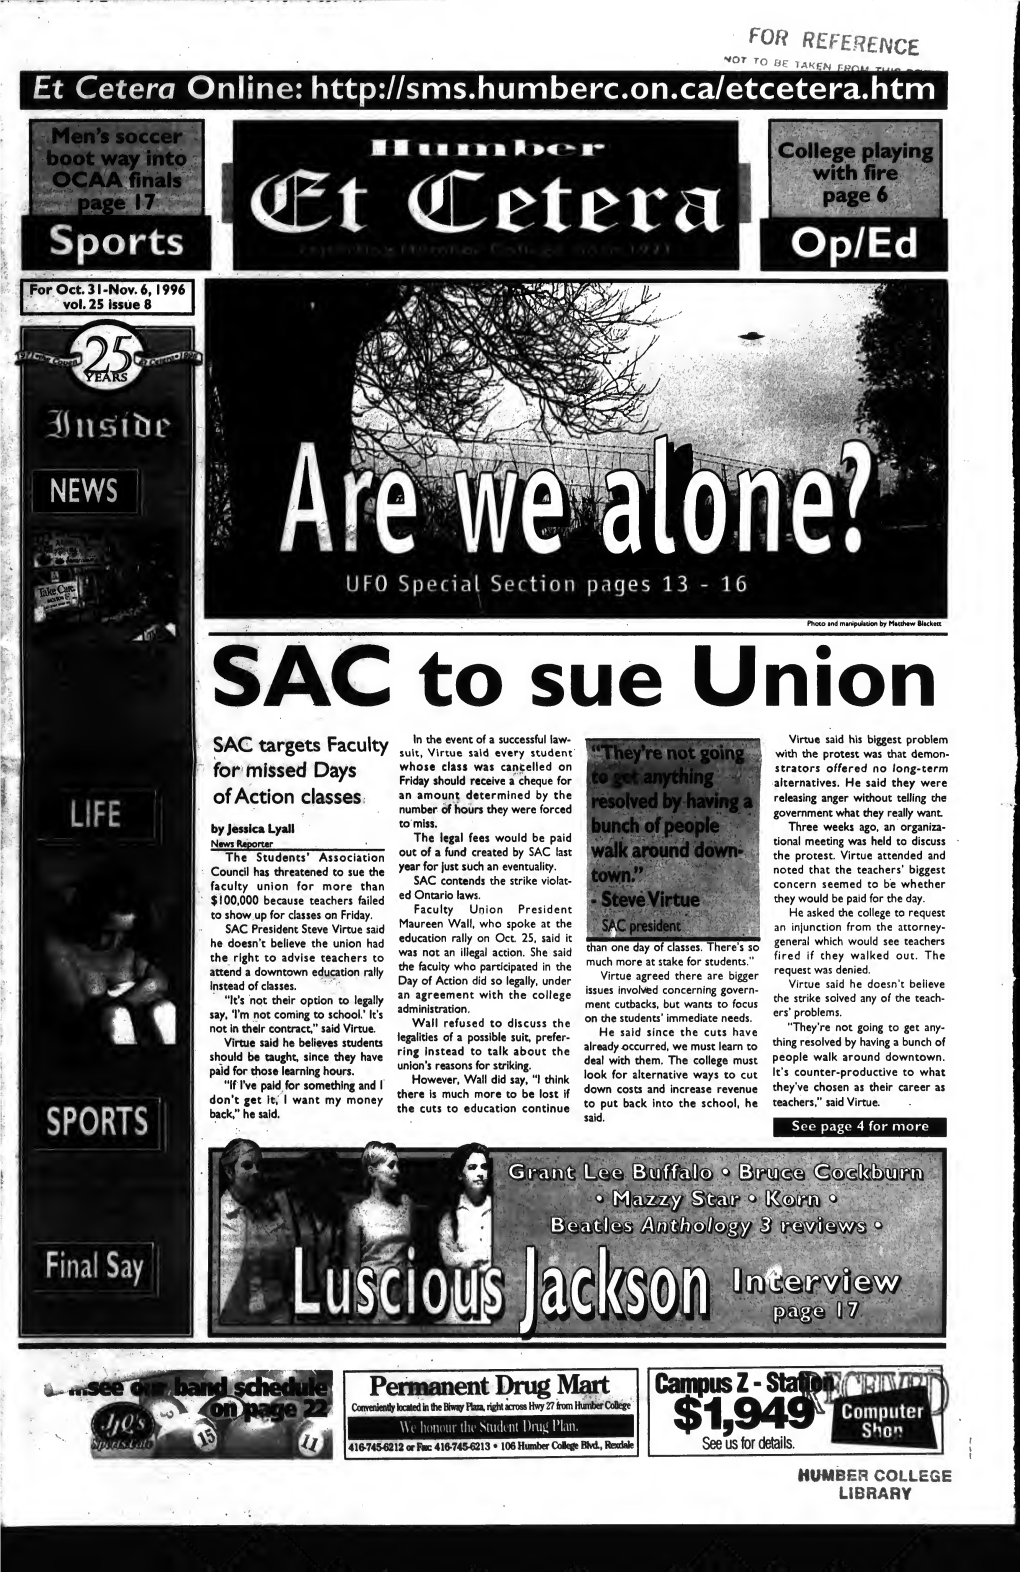 SAC to Sue Union